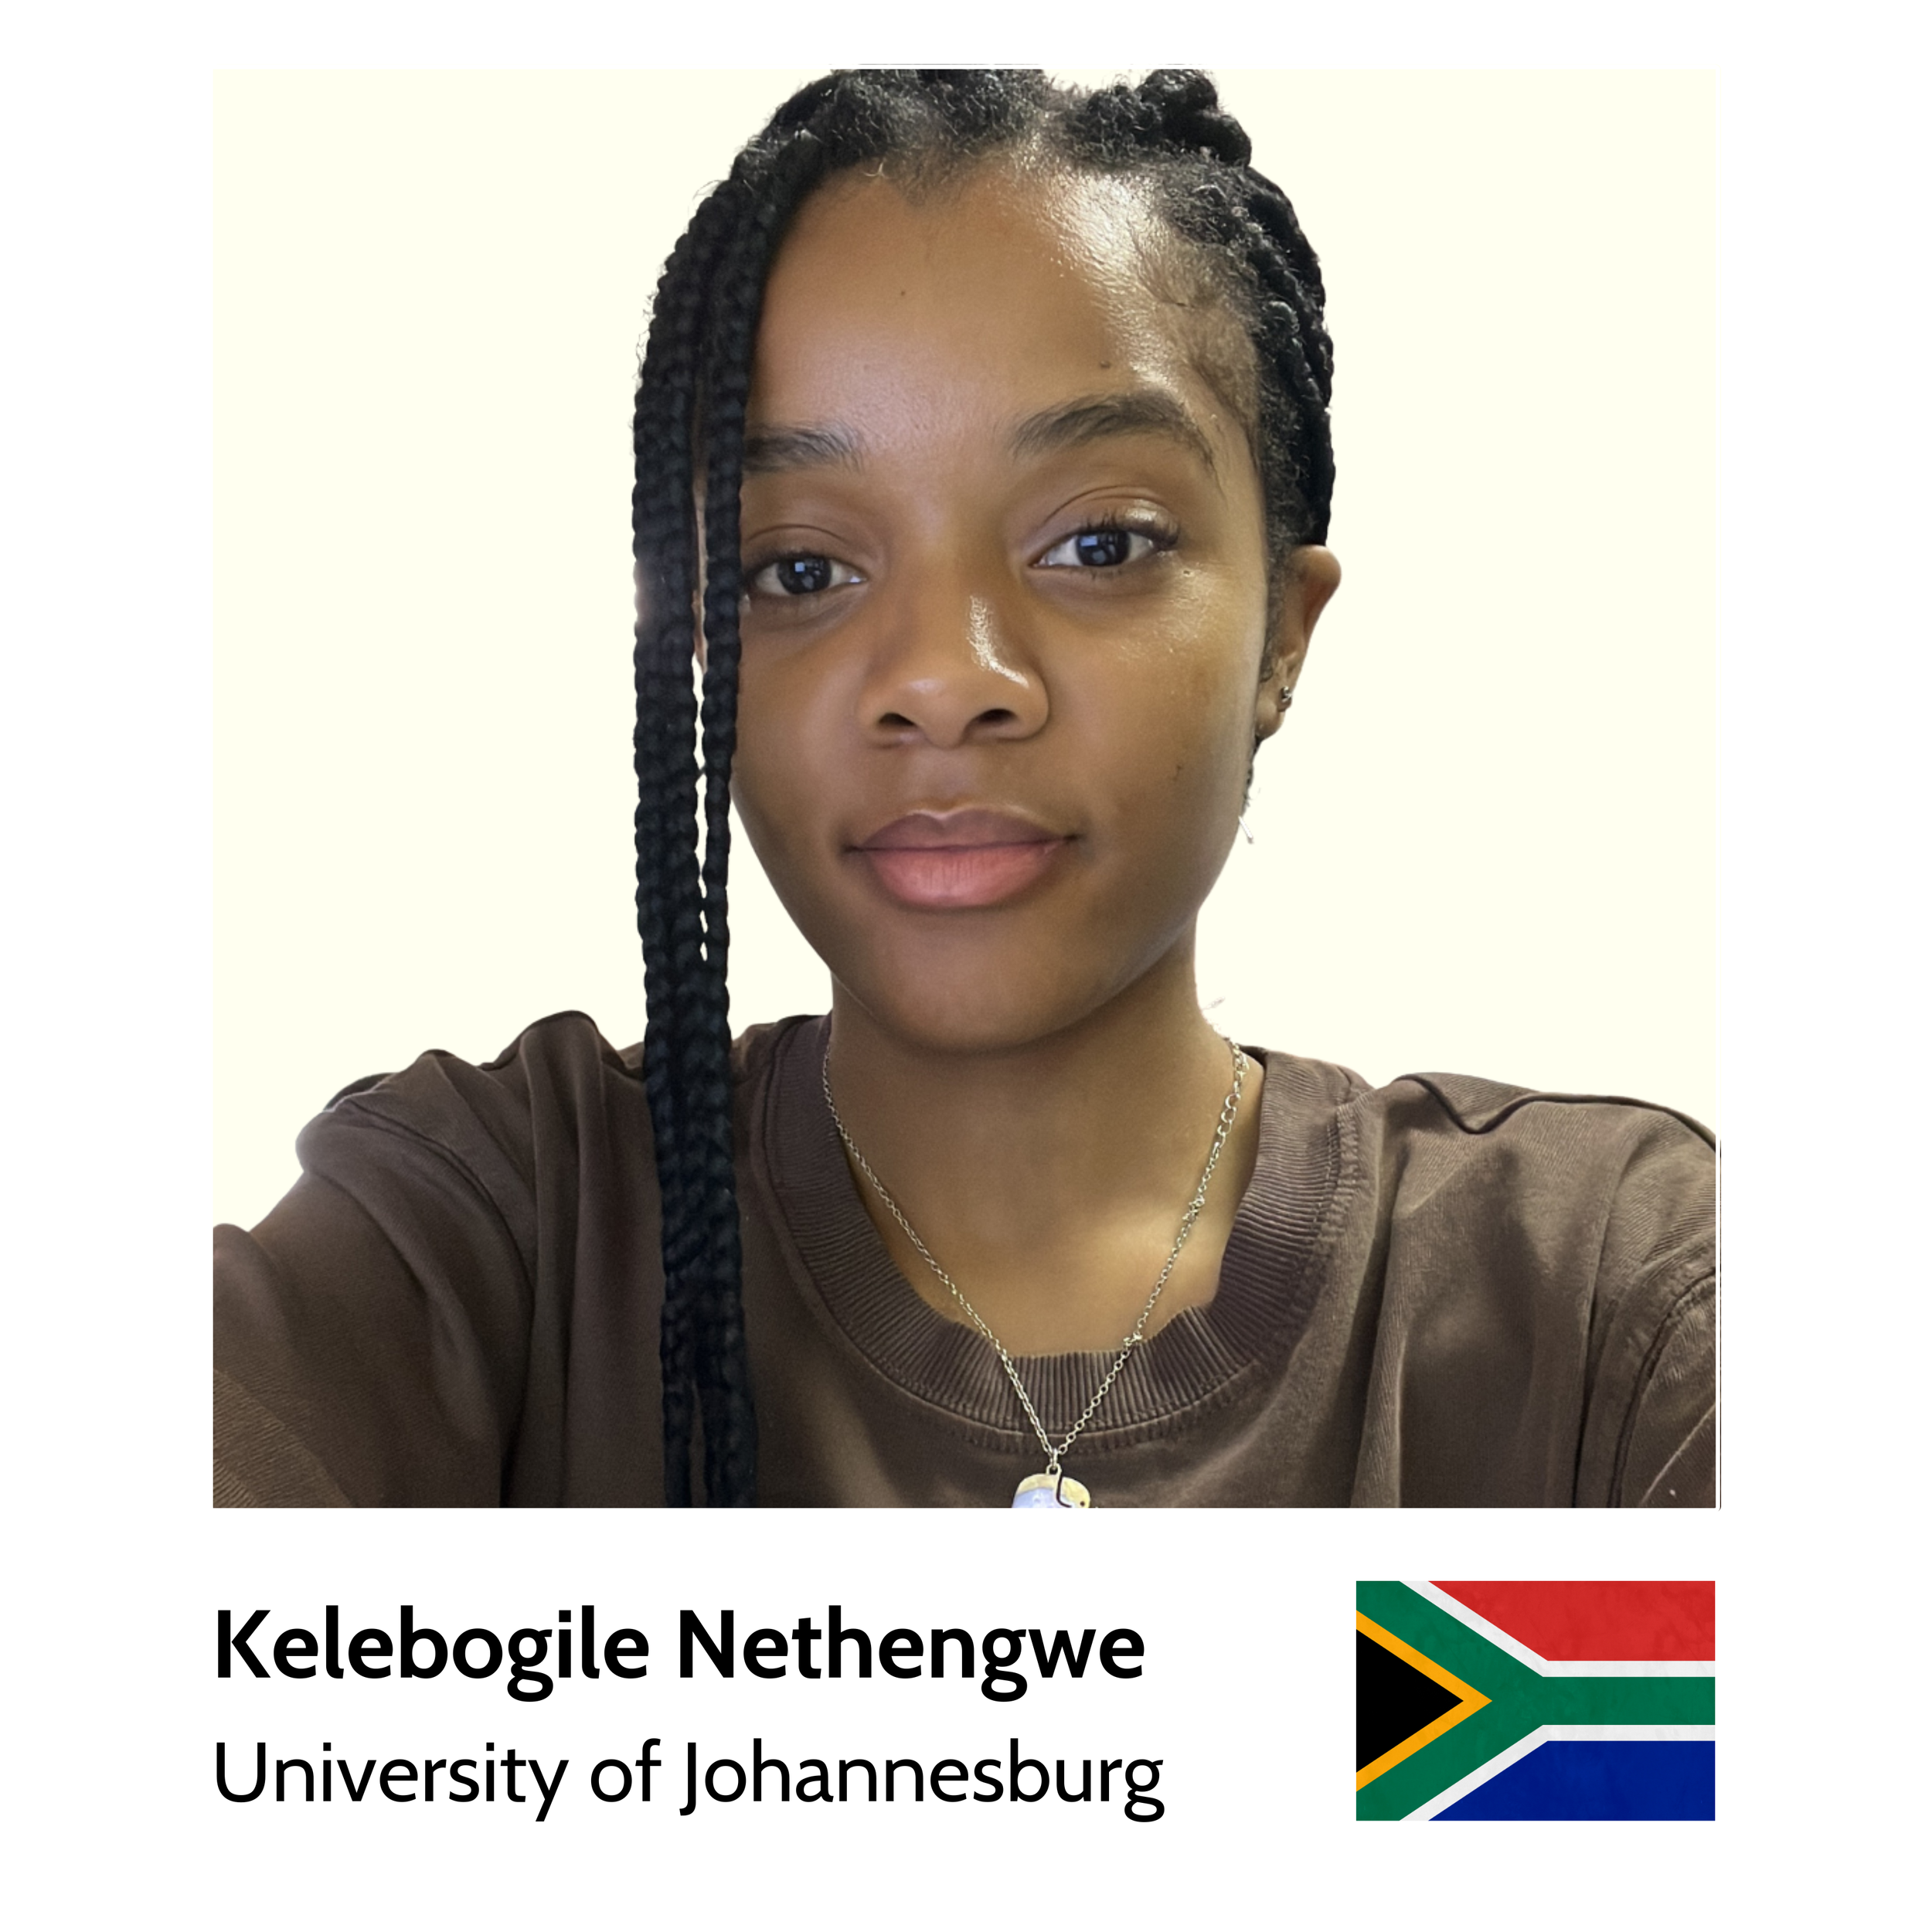 Your_Big_Year_ibm_zsystems_ambassador_Kelebogile_Nethengwe_University_of_Johannesburg.png